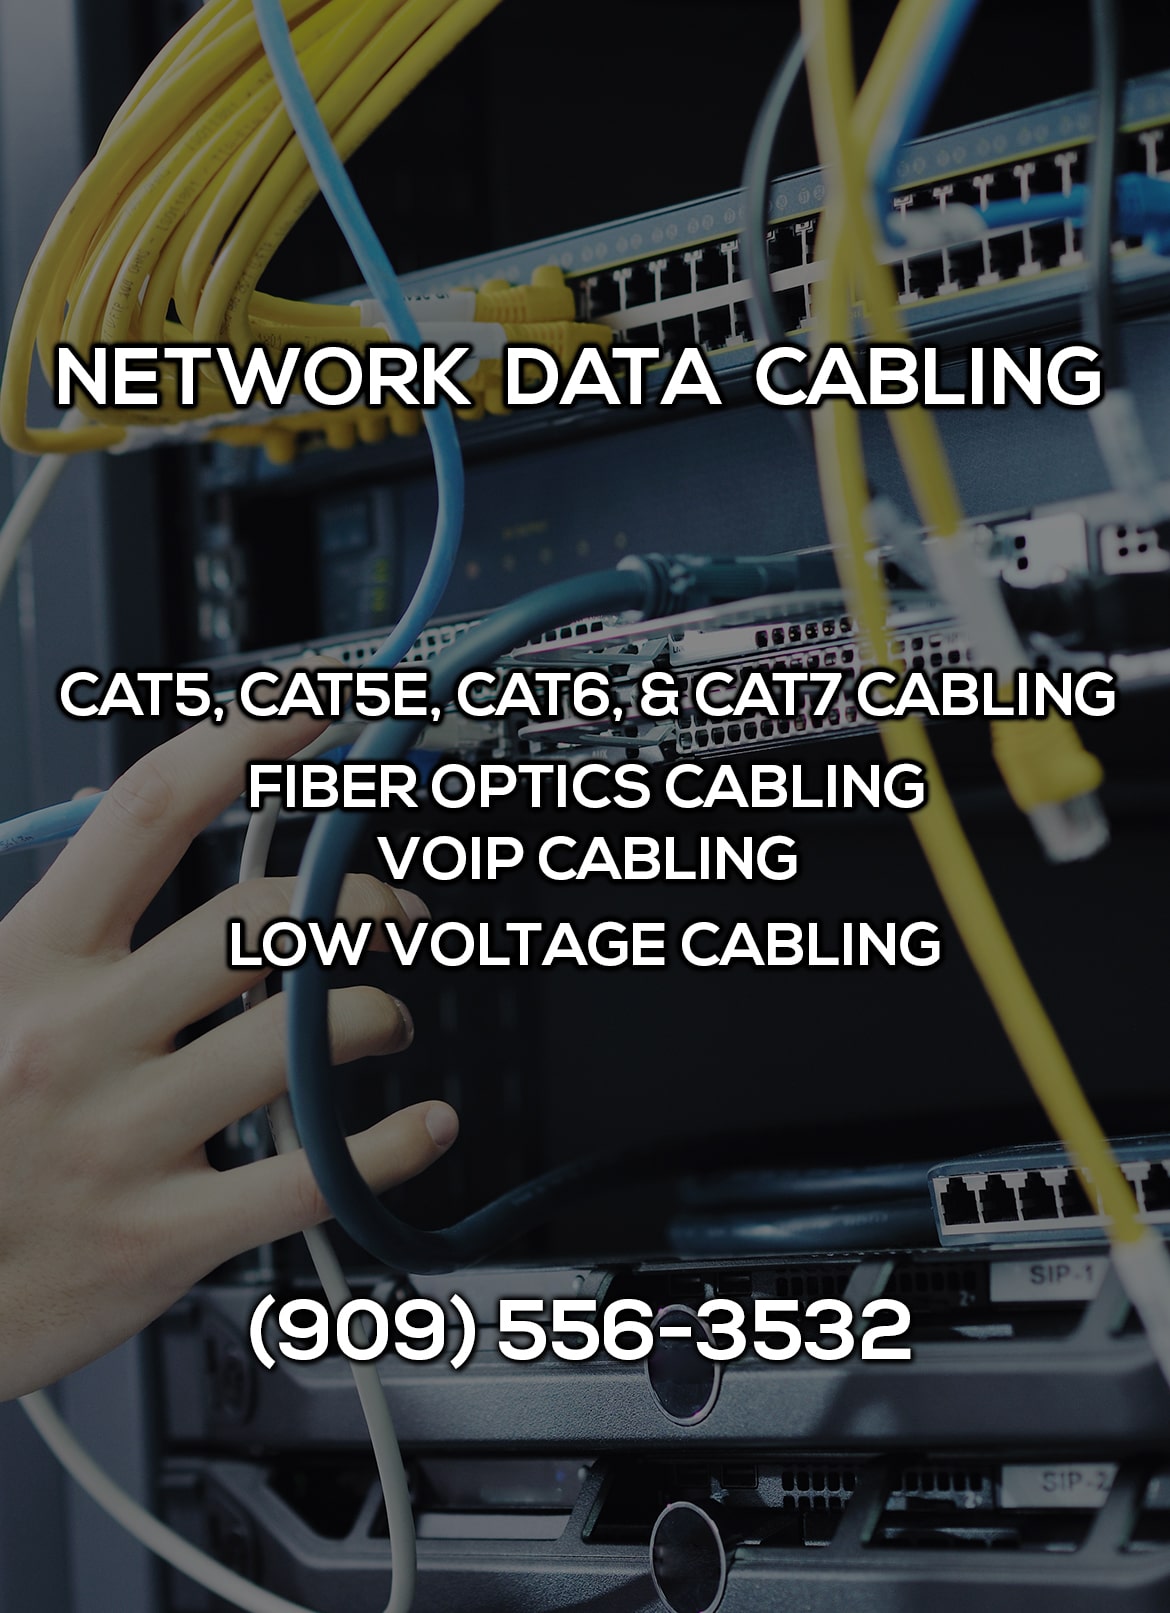 Network Data Cabling in San Bernardino CA